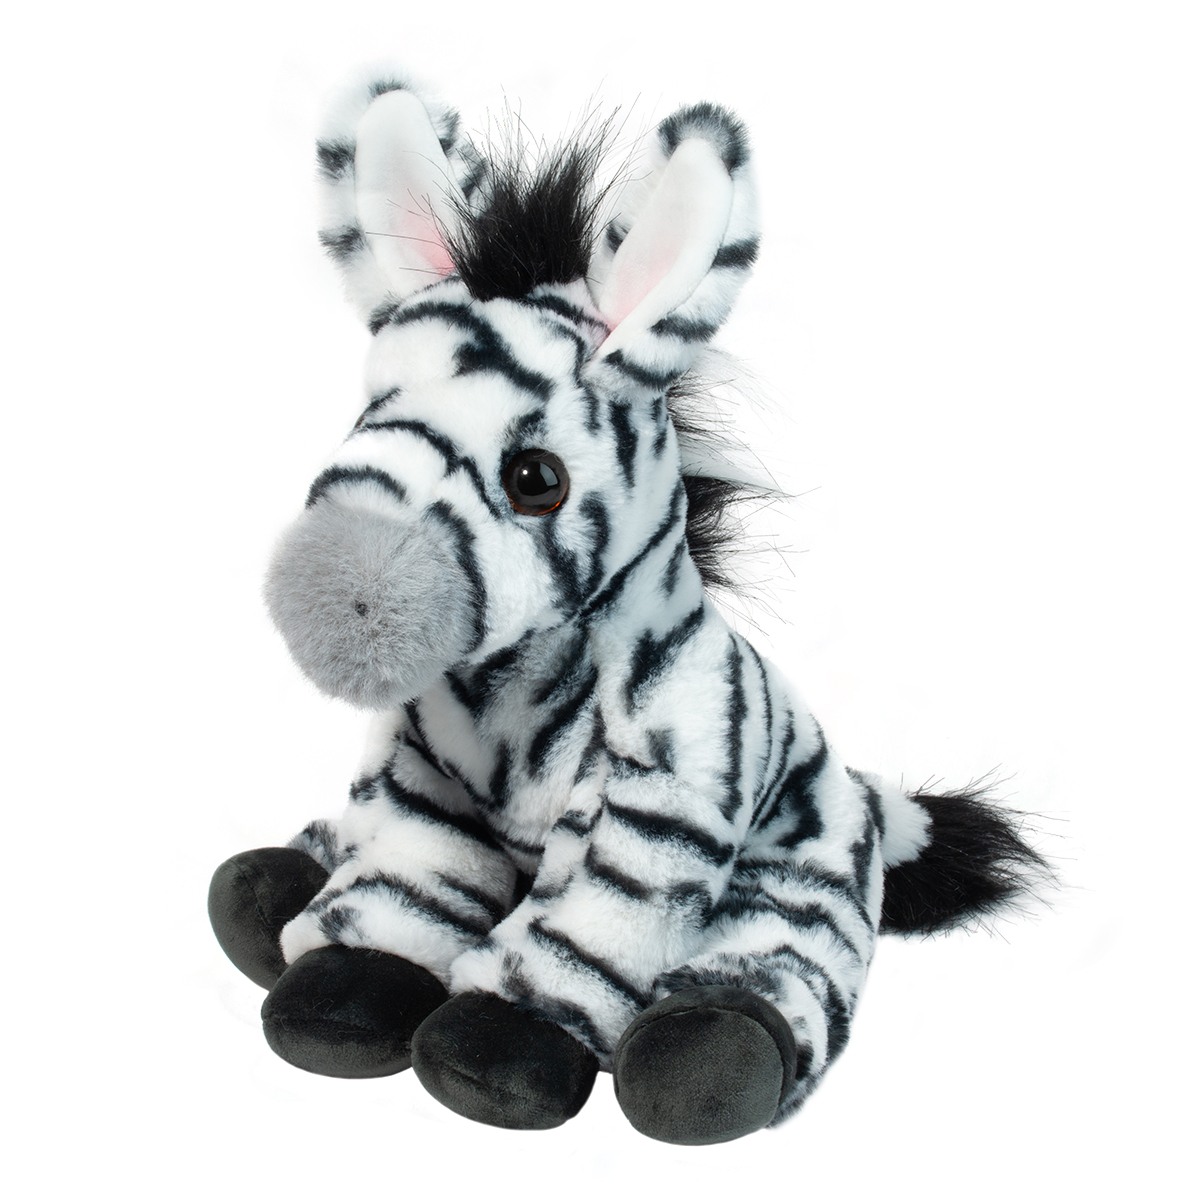 zebras white with black stripes black